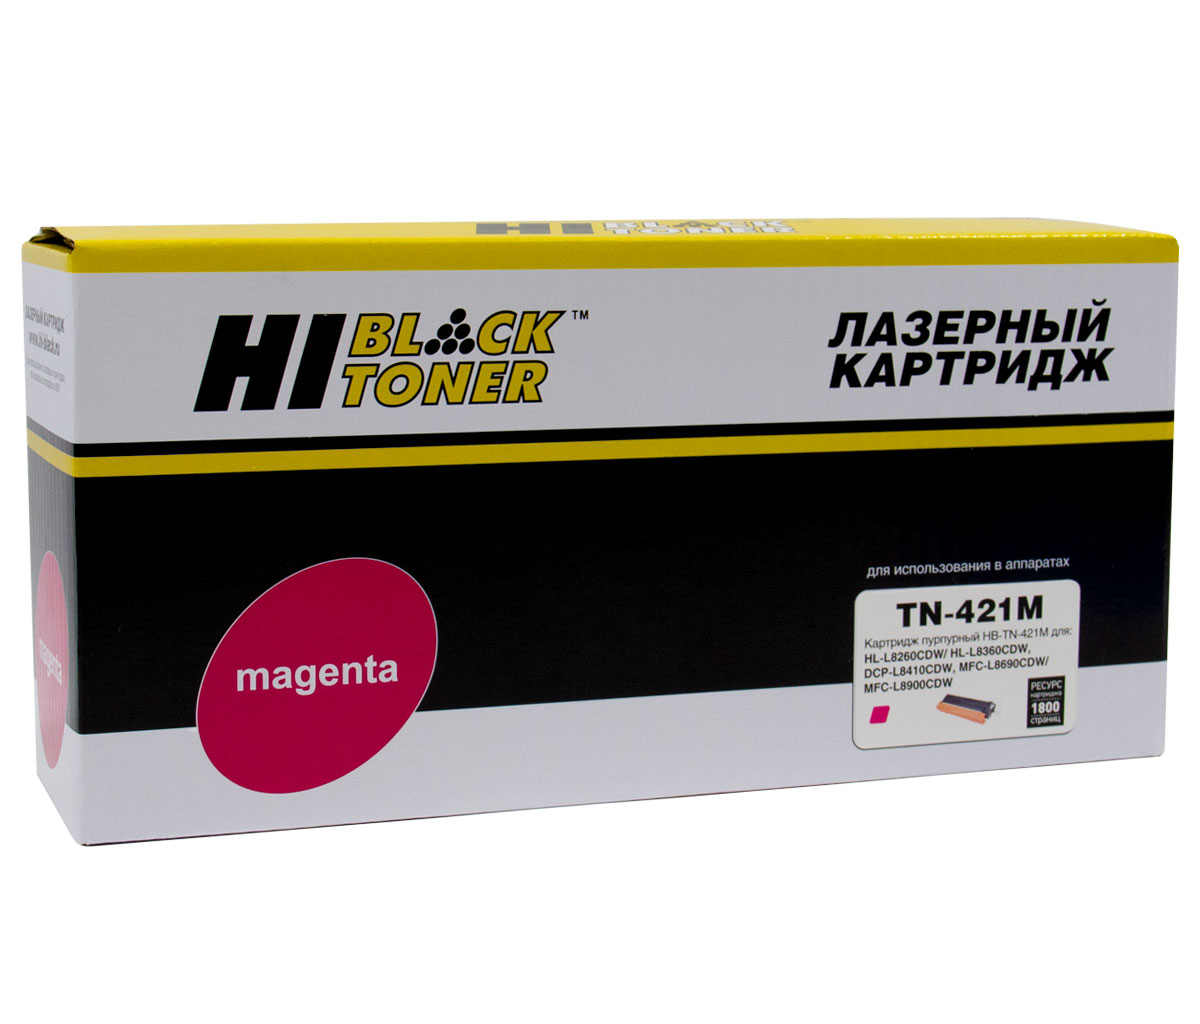 Тонер-картридж Hi-Black (HB-TN-421M) для BrotherHL-L8260/8360/MFC L8690/8900/DCP L8410, M, 1,8K